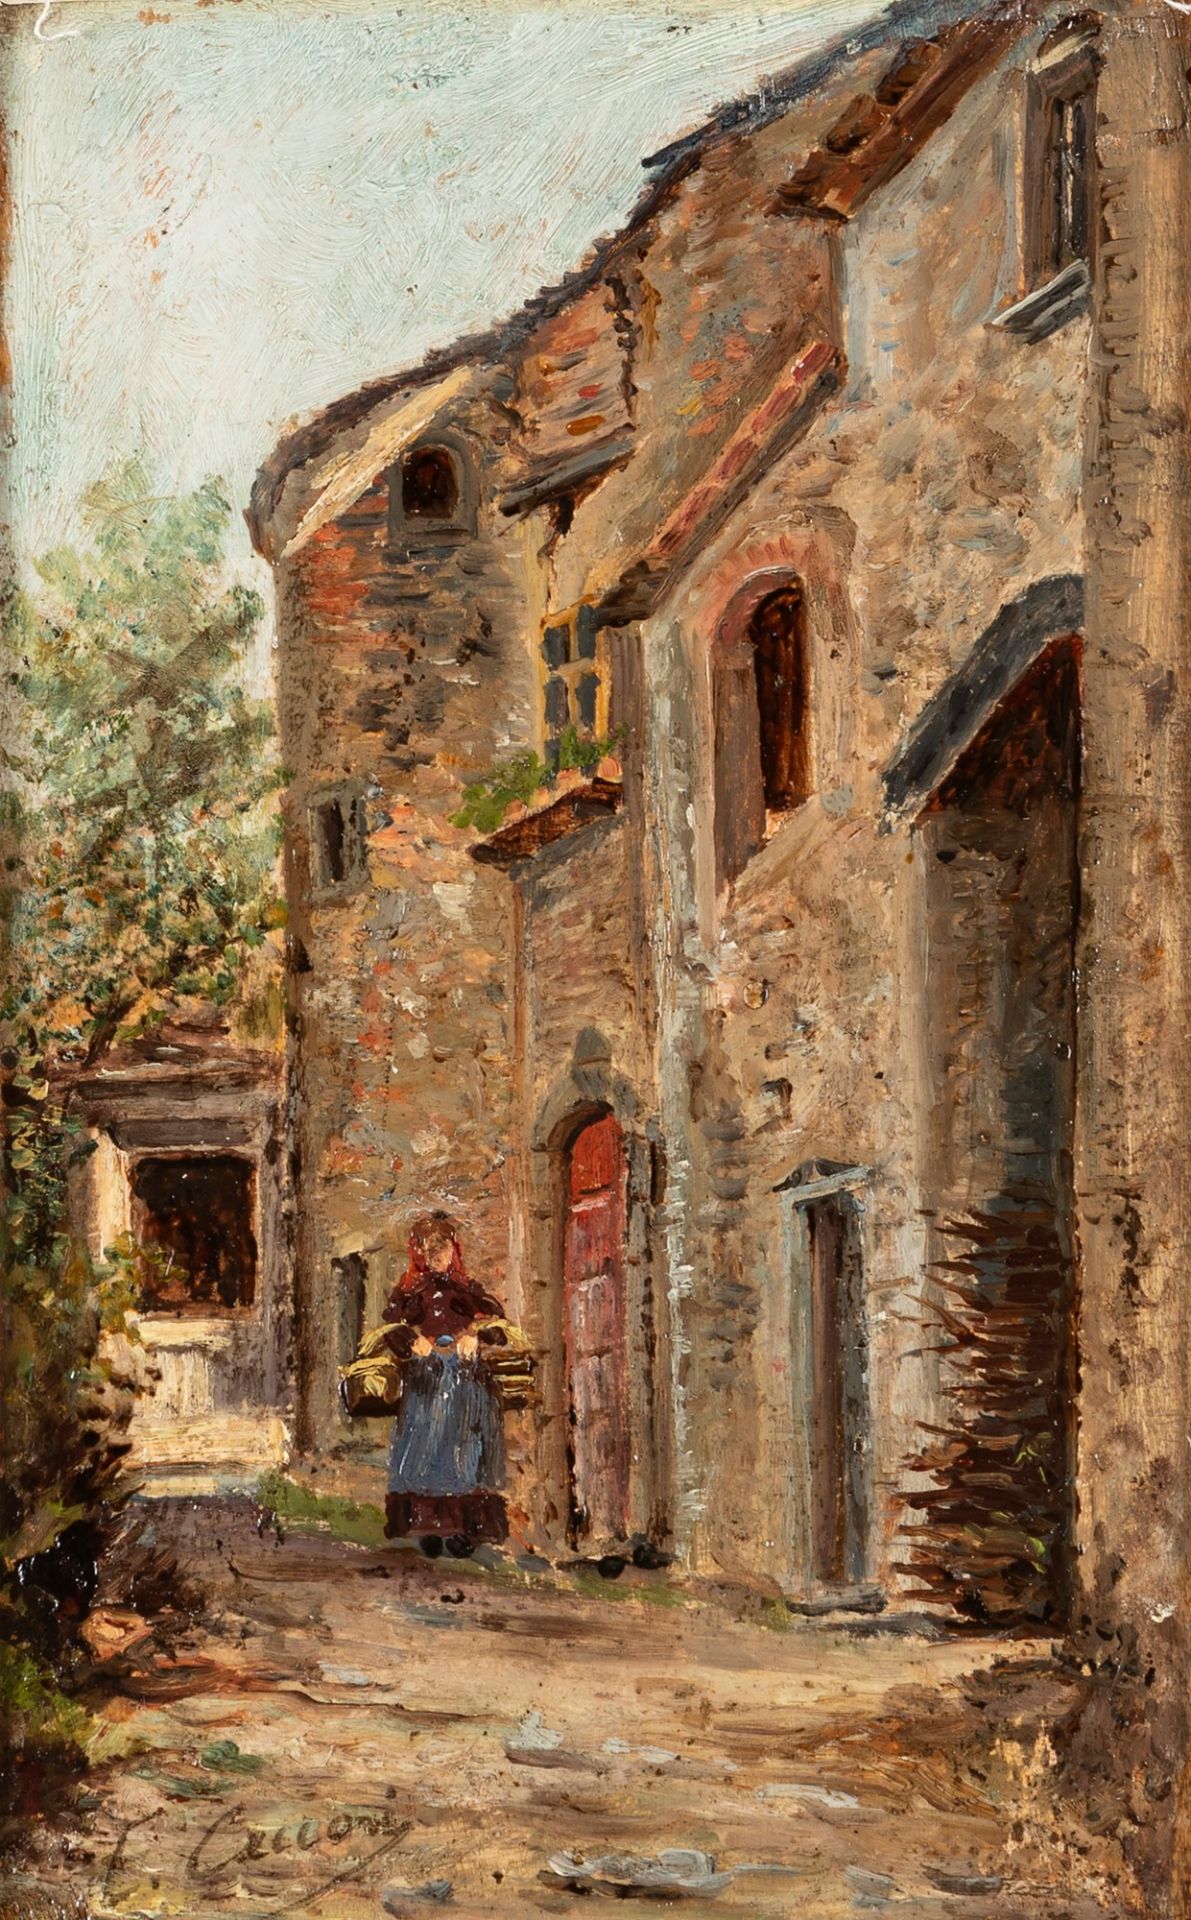 Eugenio Cecconi (Livorno 1842-Firenze 1903) - Peasant woman in the village